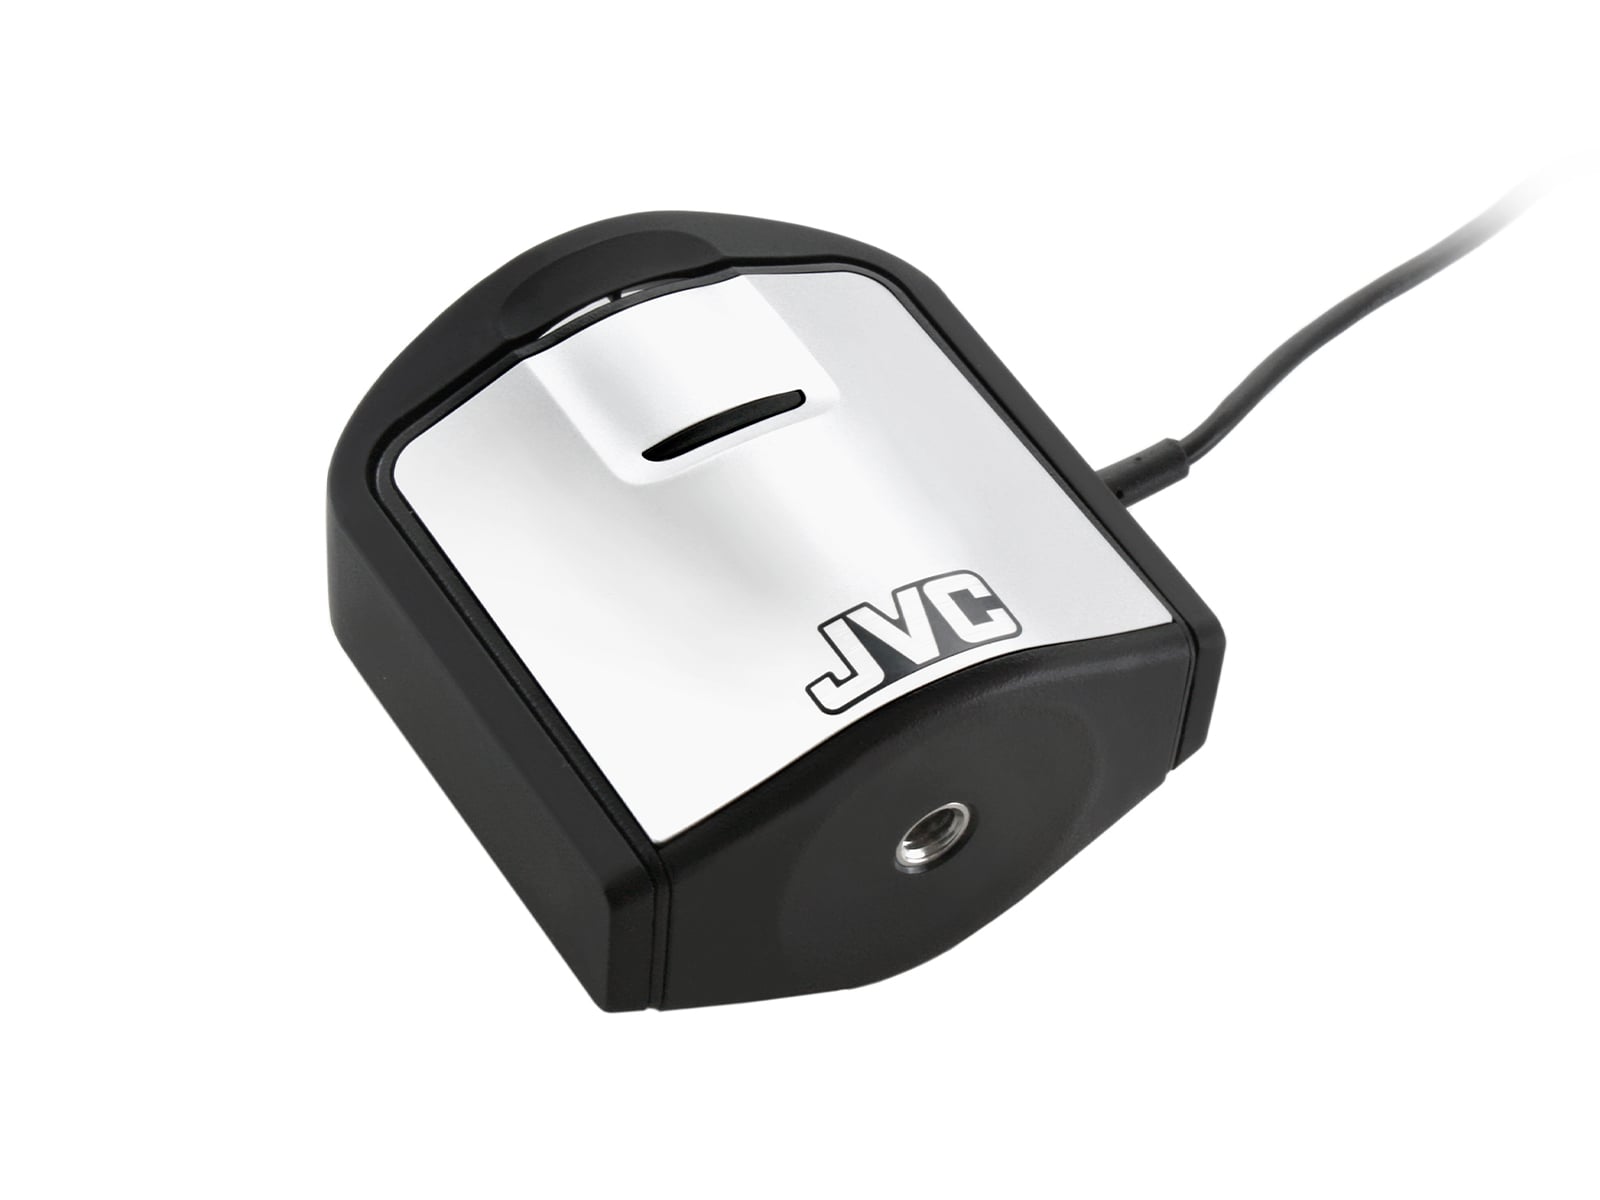 Kit de sensor de calibración JVC Totoku Medivisor NX con software de control de calidad (CAL-016) Monitors.com